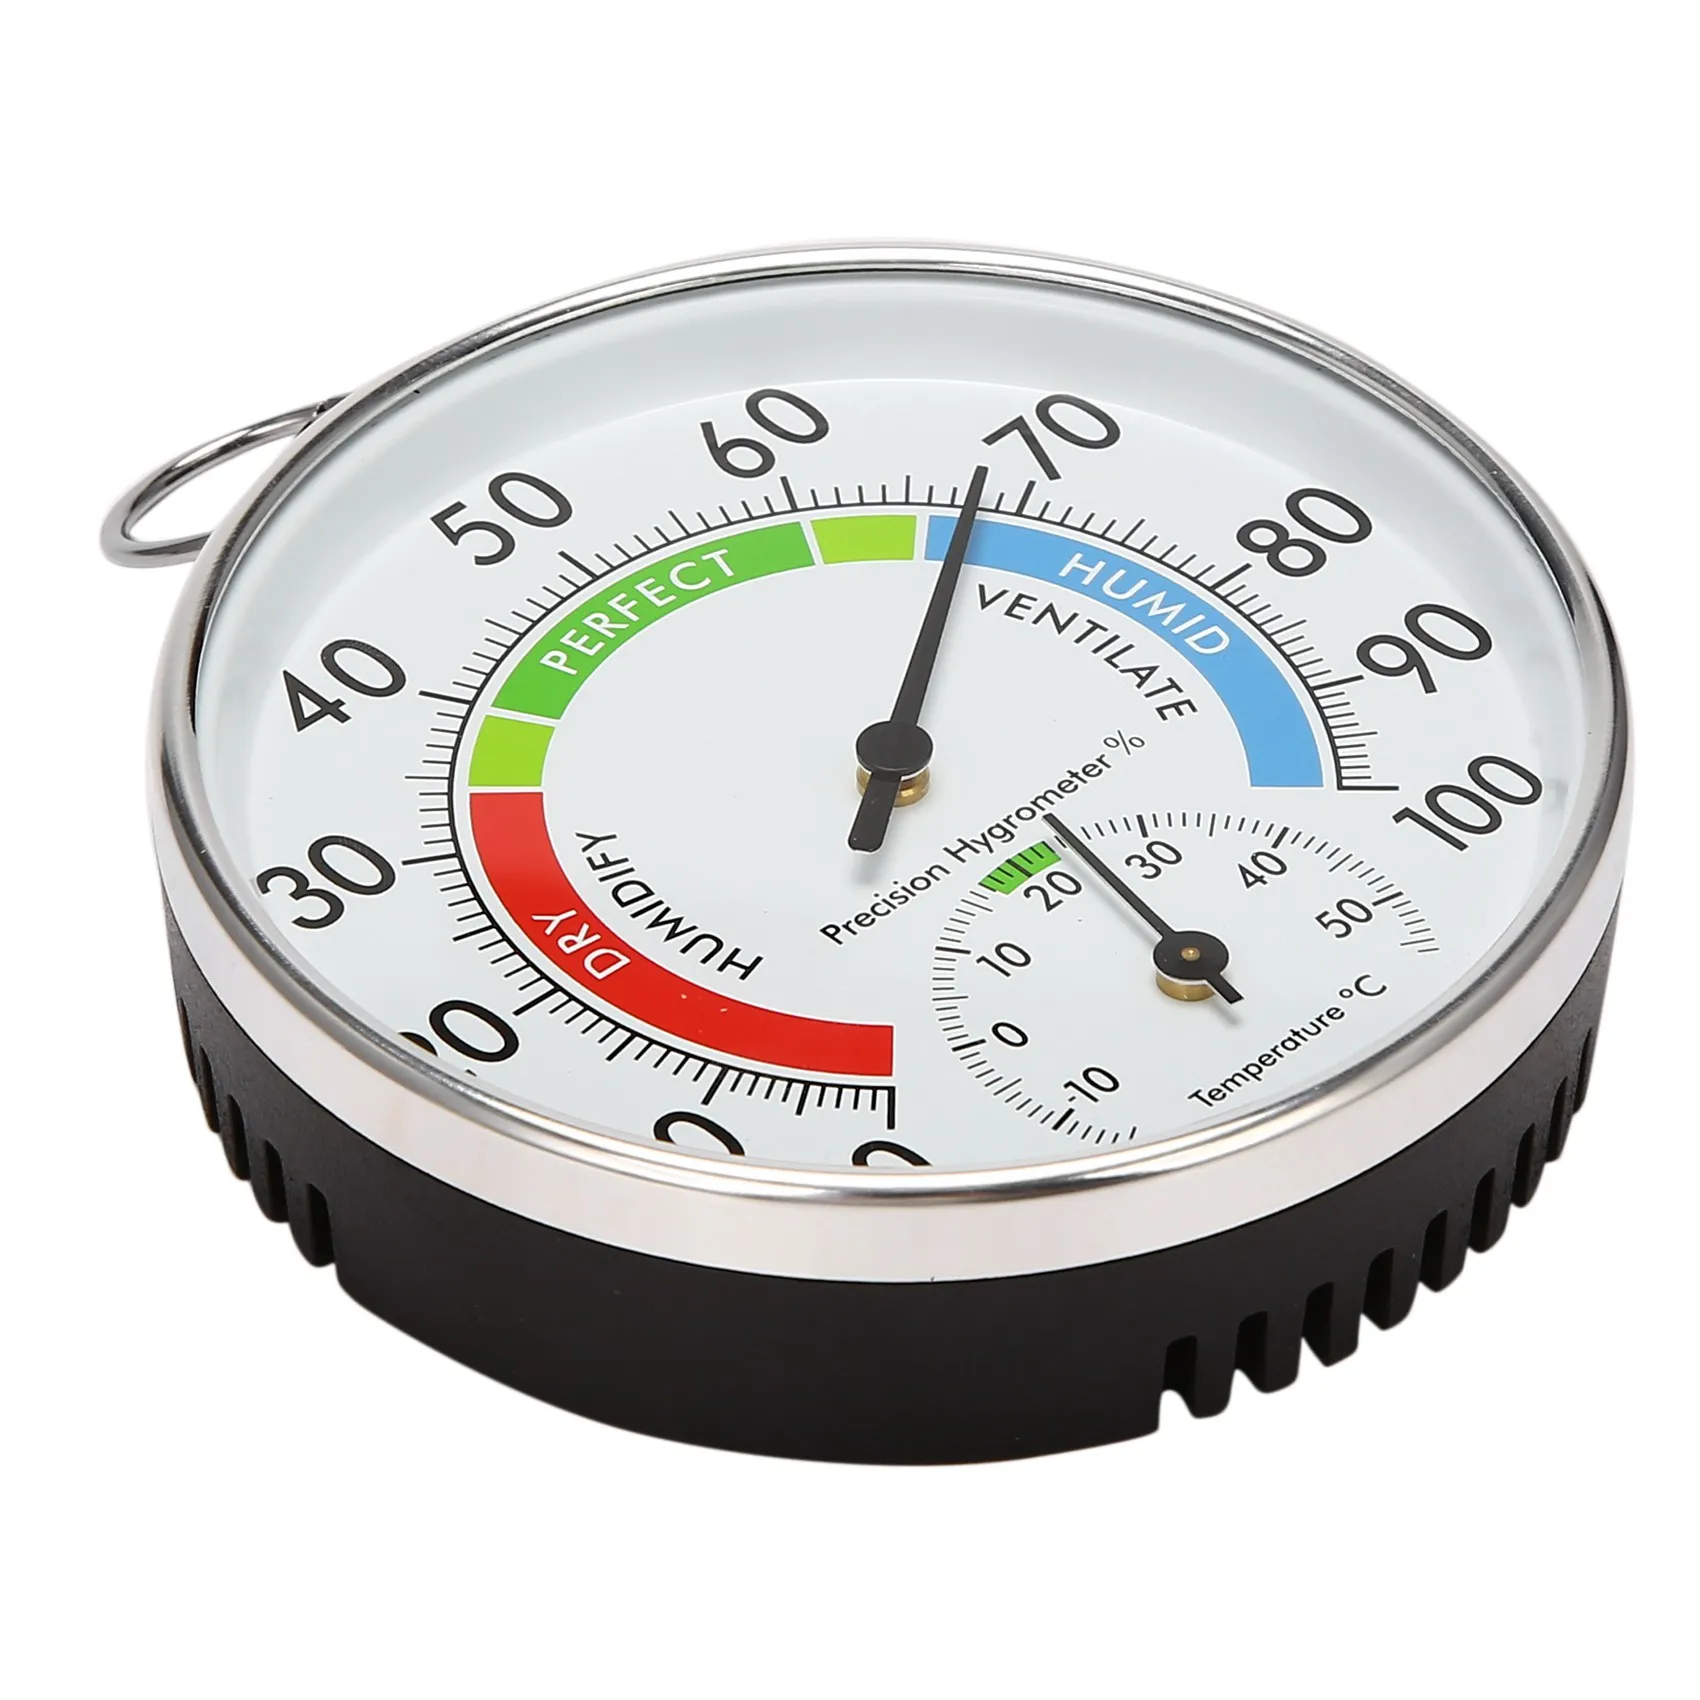 

Термометр-Гигрометр L15 с аналоговым индикатором температуры и влажности